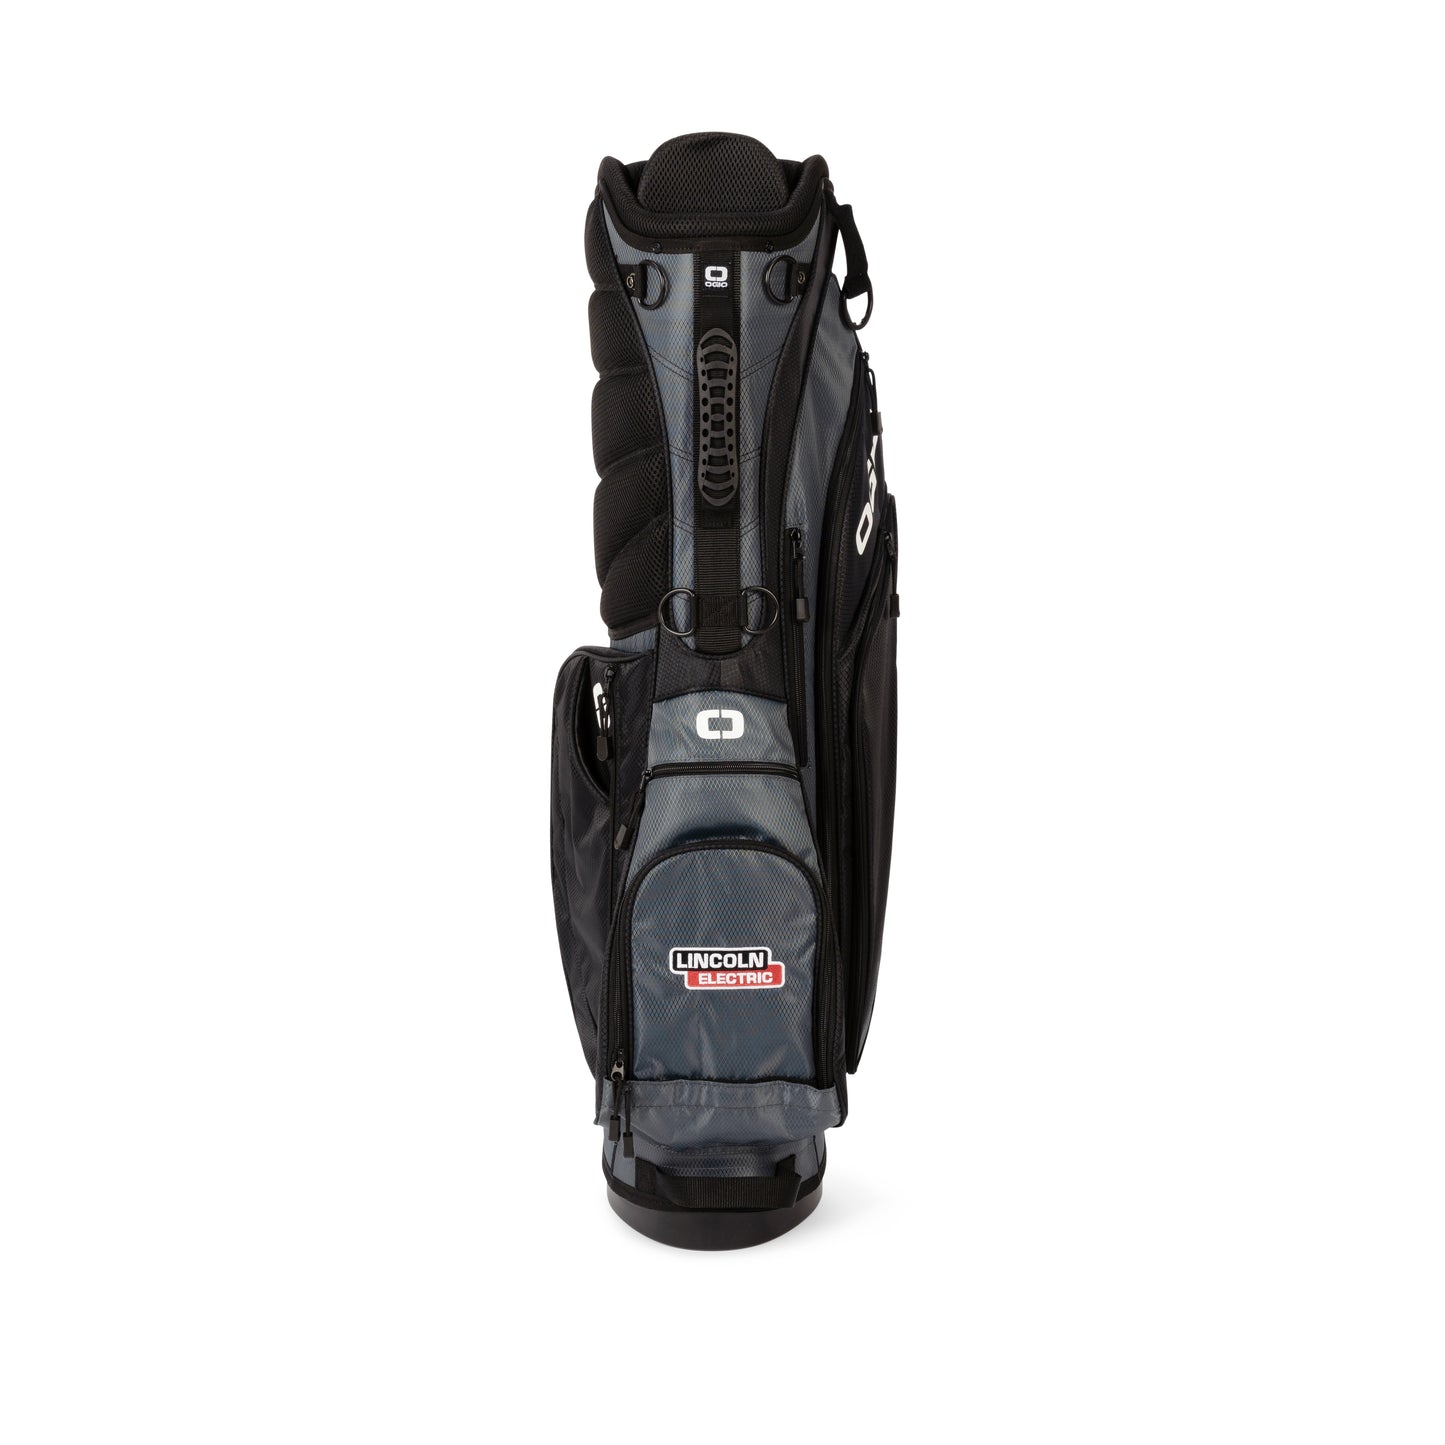 OGIO ® XL (Xtra-Light) 2.0 Golf Bag - Lockheed Martin Company Store